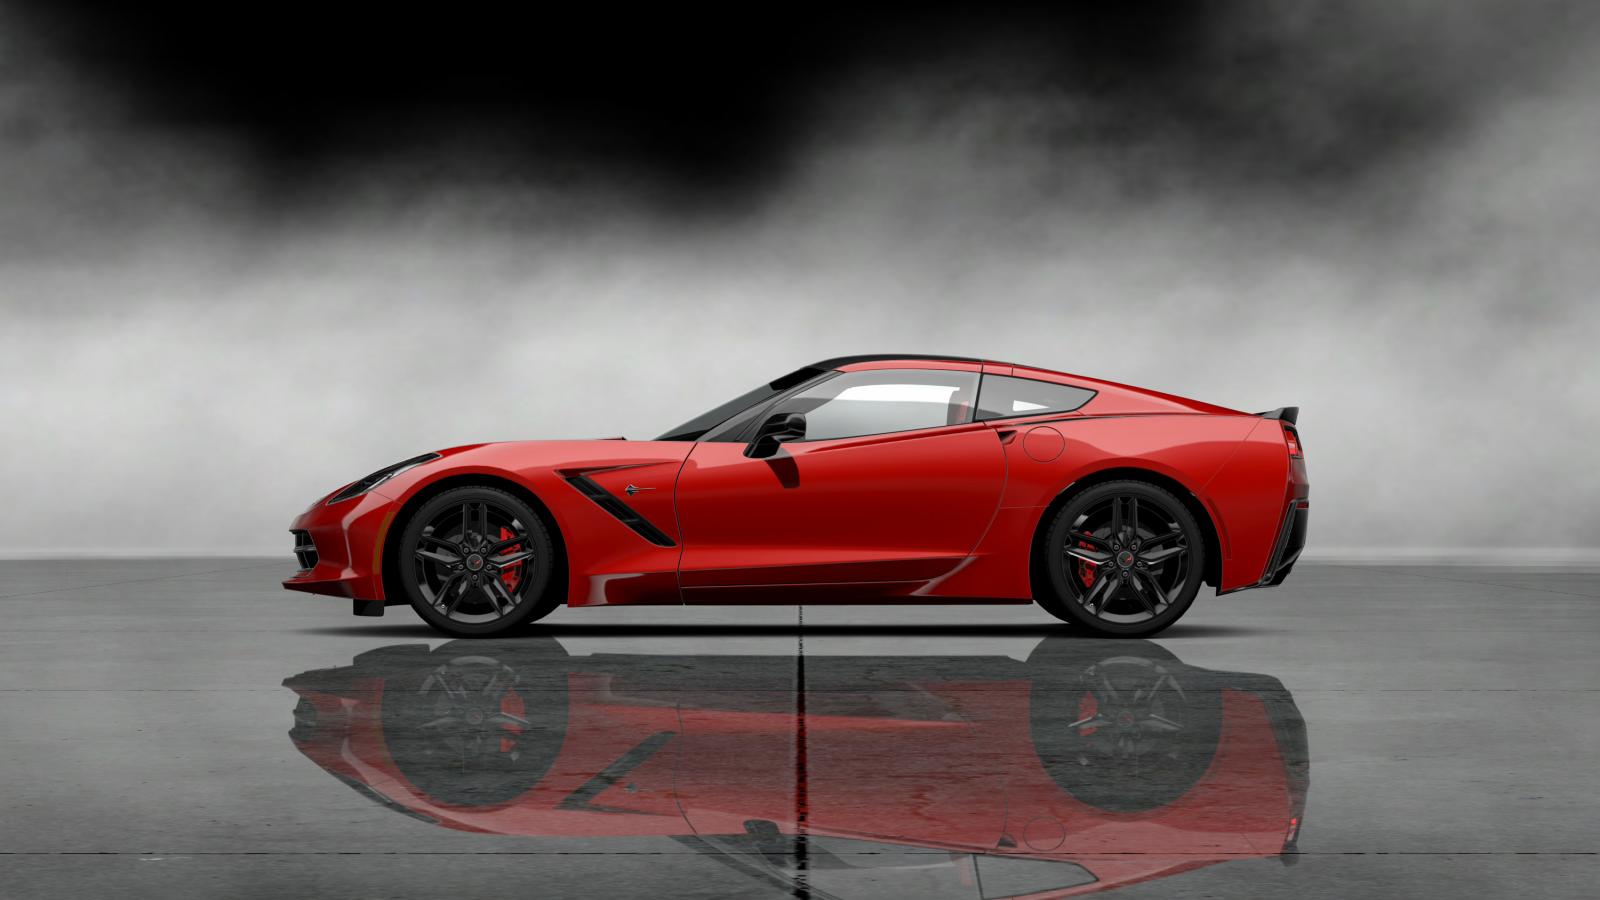 Red Corvette C7 Stingray Wallpaper High Definition